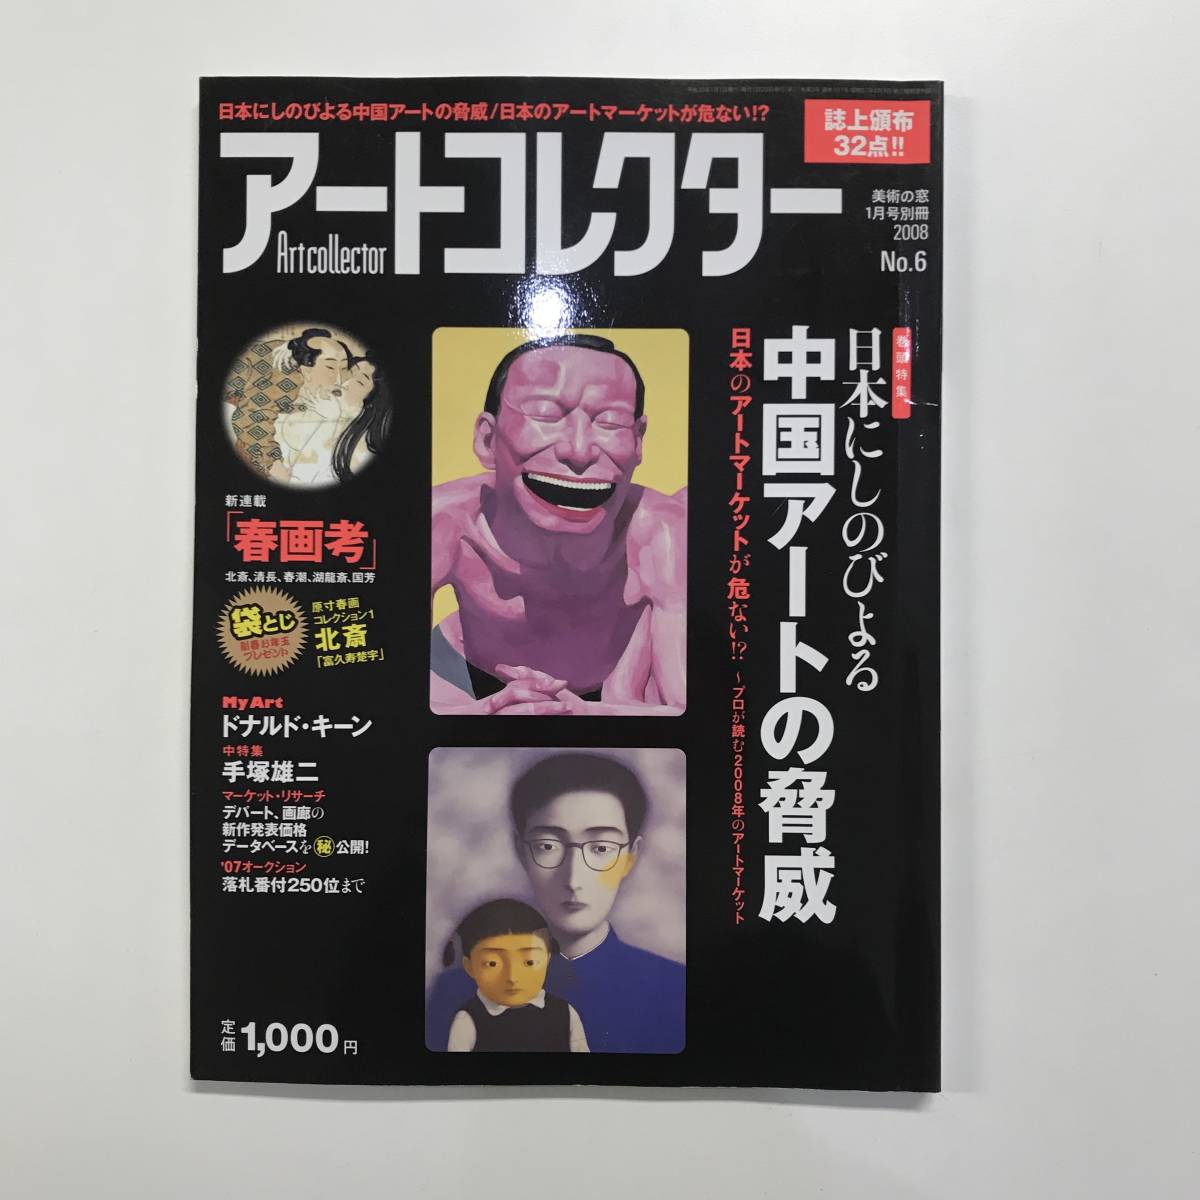 Artcollector アートコレクター NO.6 日本にしのびよる中国アートの脅威 2008年 t00154_d11 高い素材 新作販売 美術の窓1月号別冊